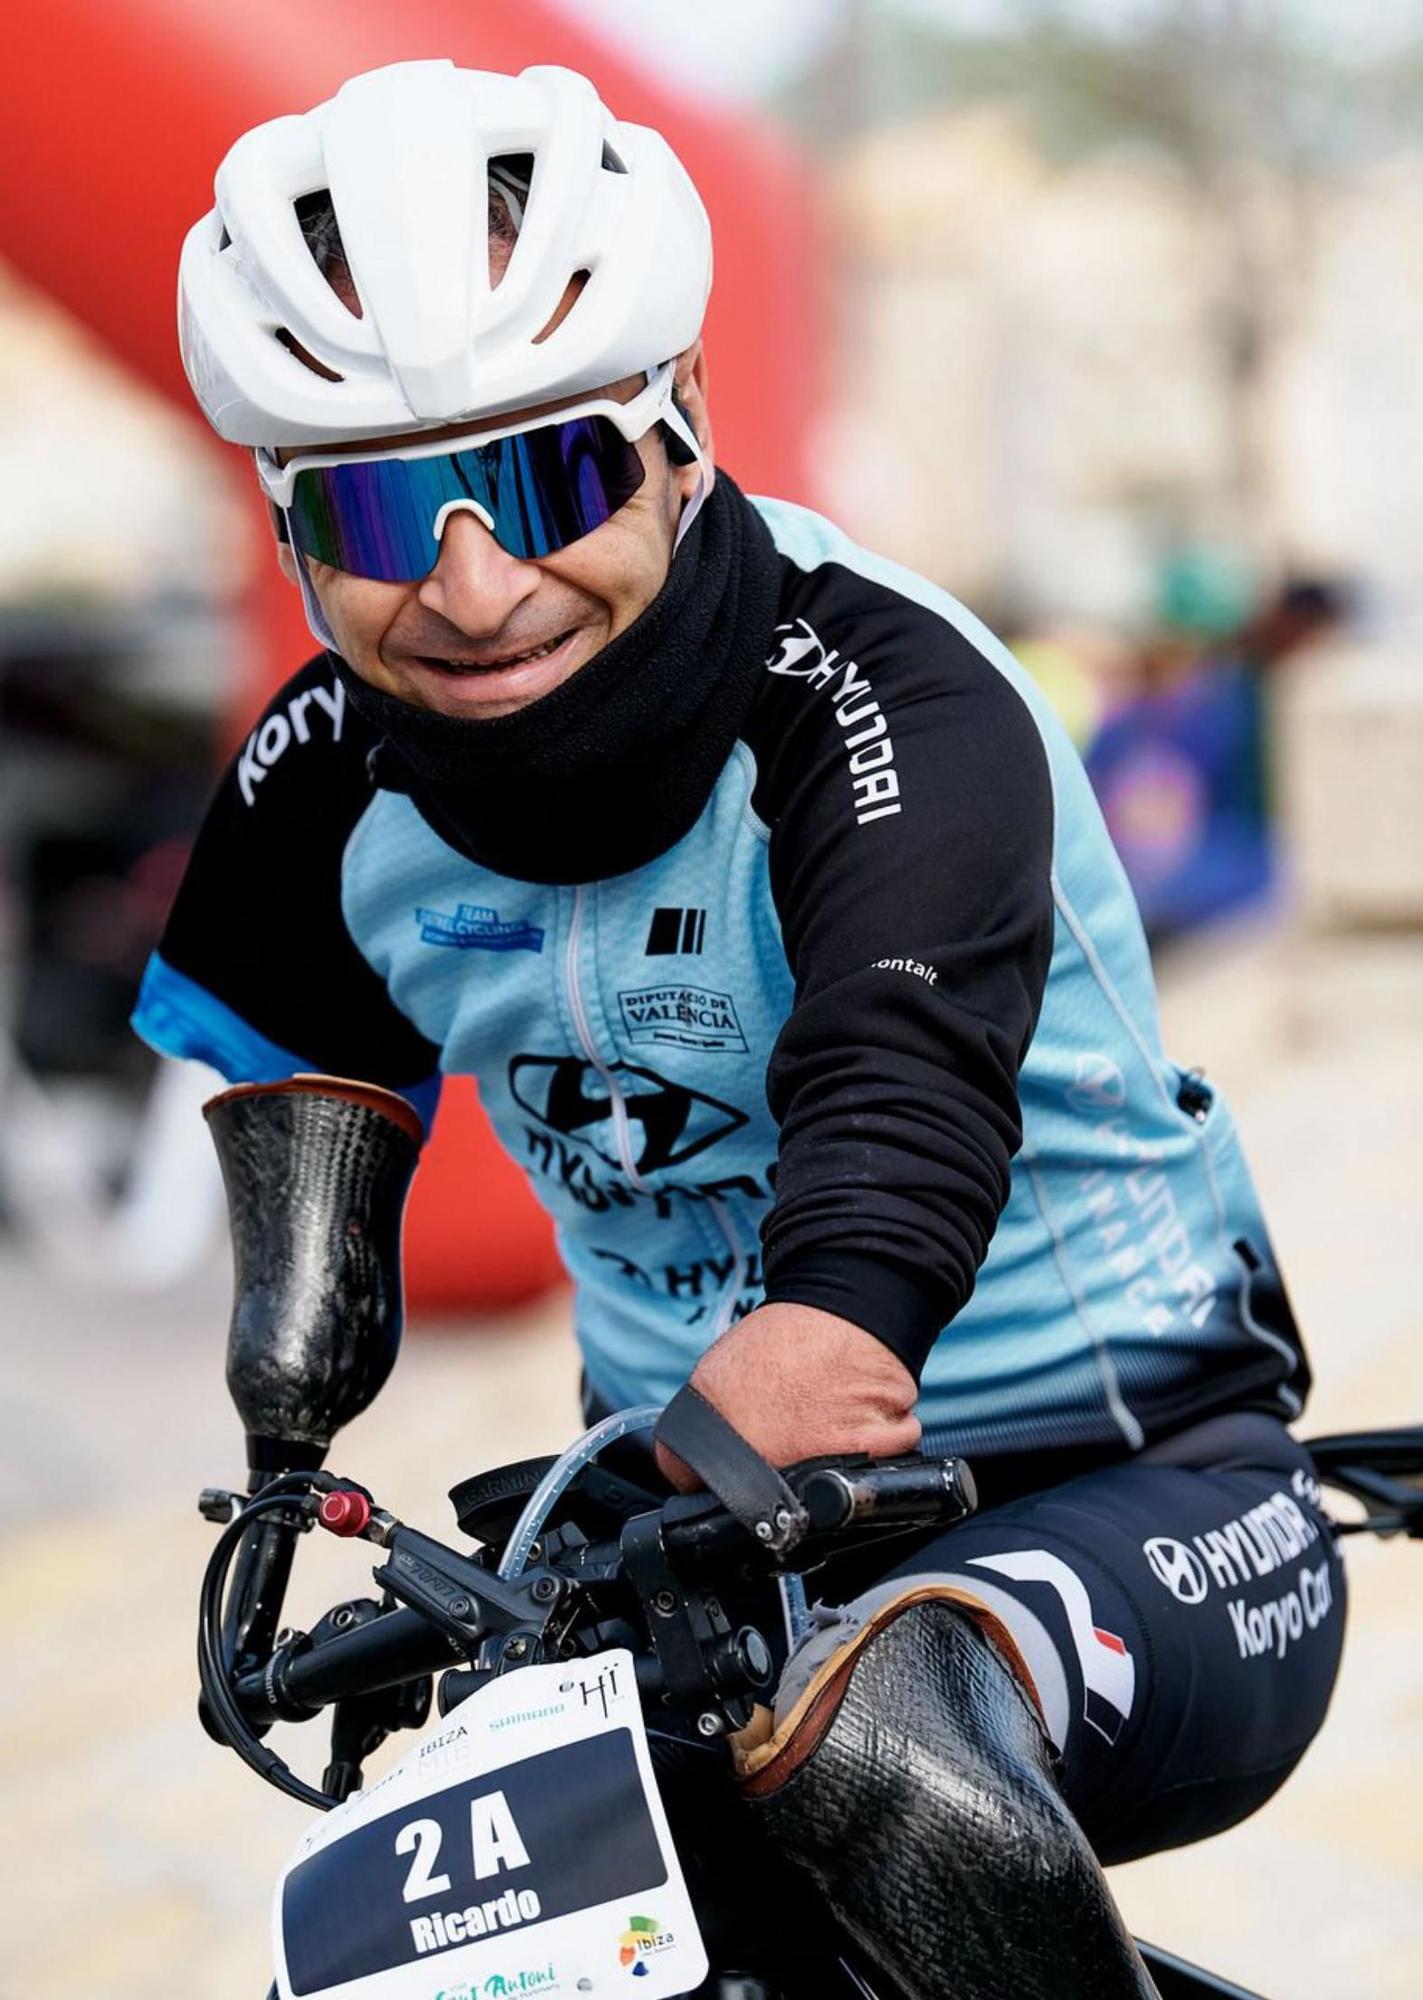  El paralímpico Ricardo Ten, sonriente en la Vuelta